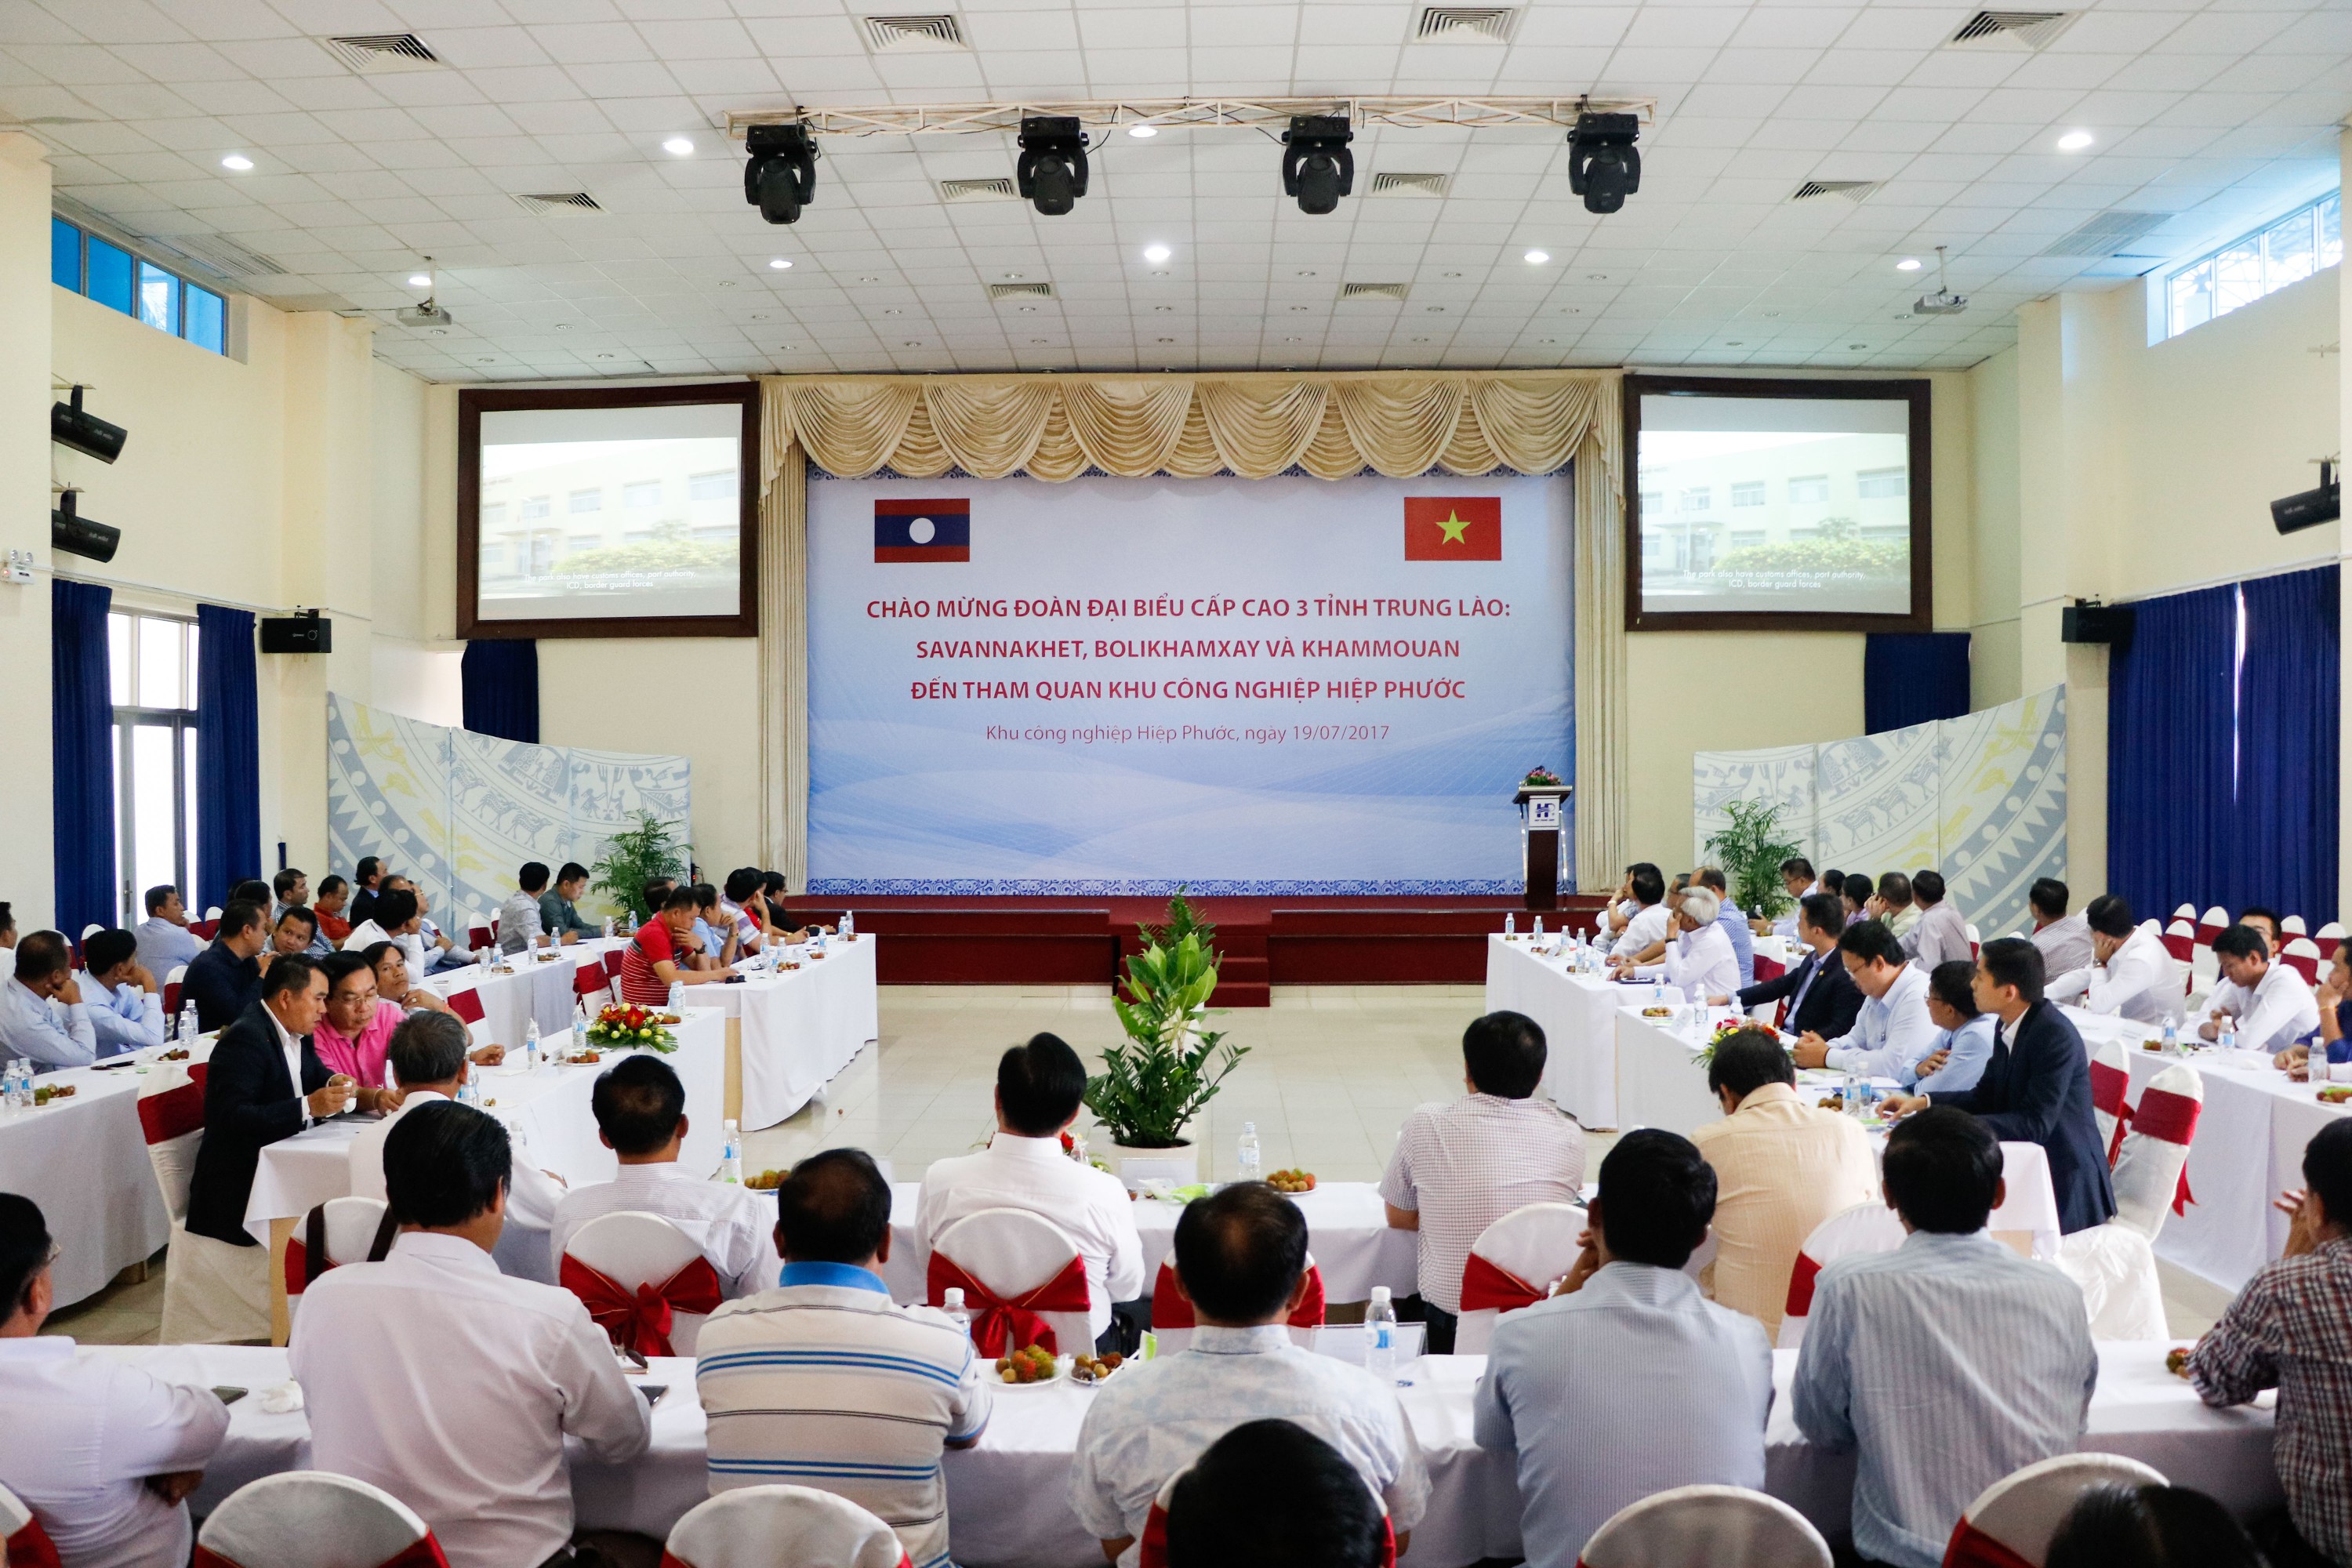 Đoàn đại biểu cấp cao 3 tỉnh Trung Lào đến tham quan và làm việc tại KCN Hiệp Phước 2